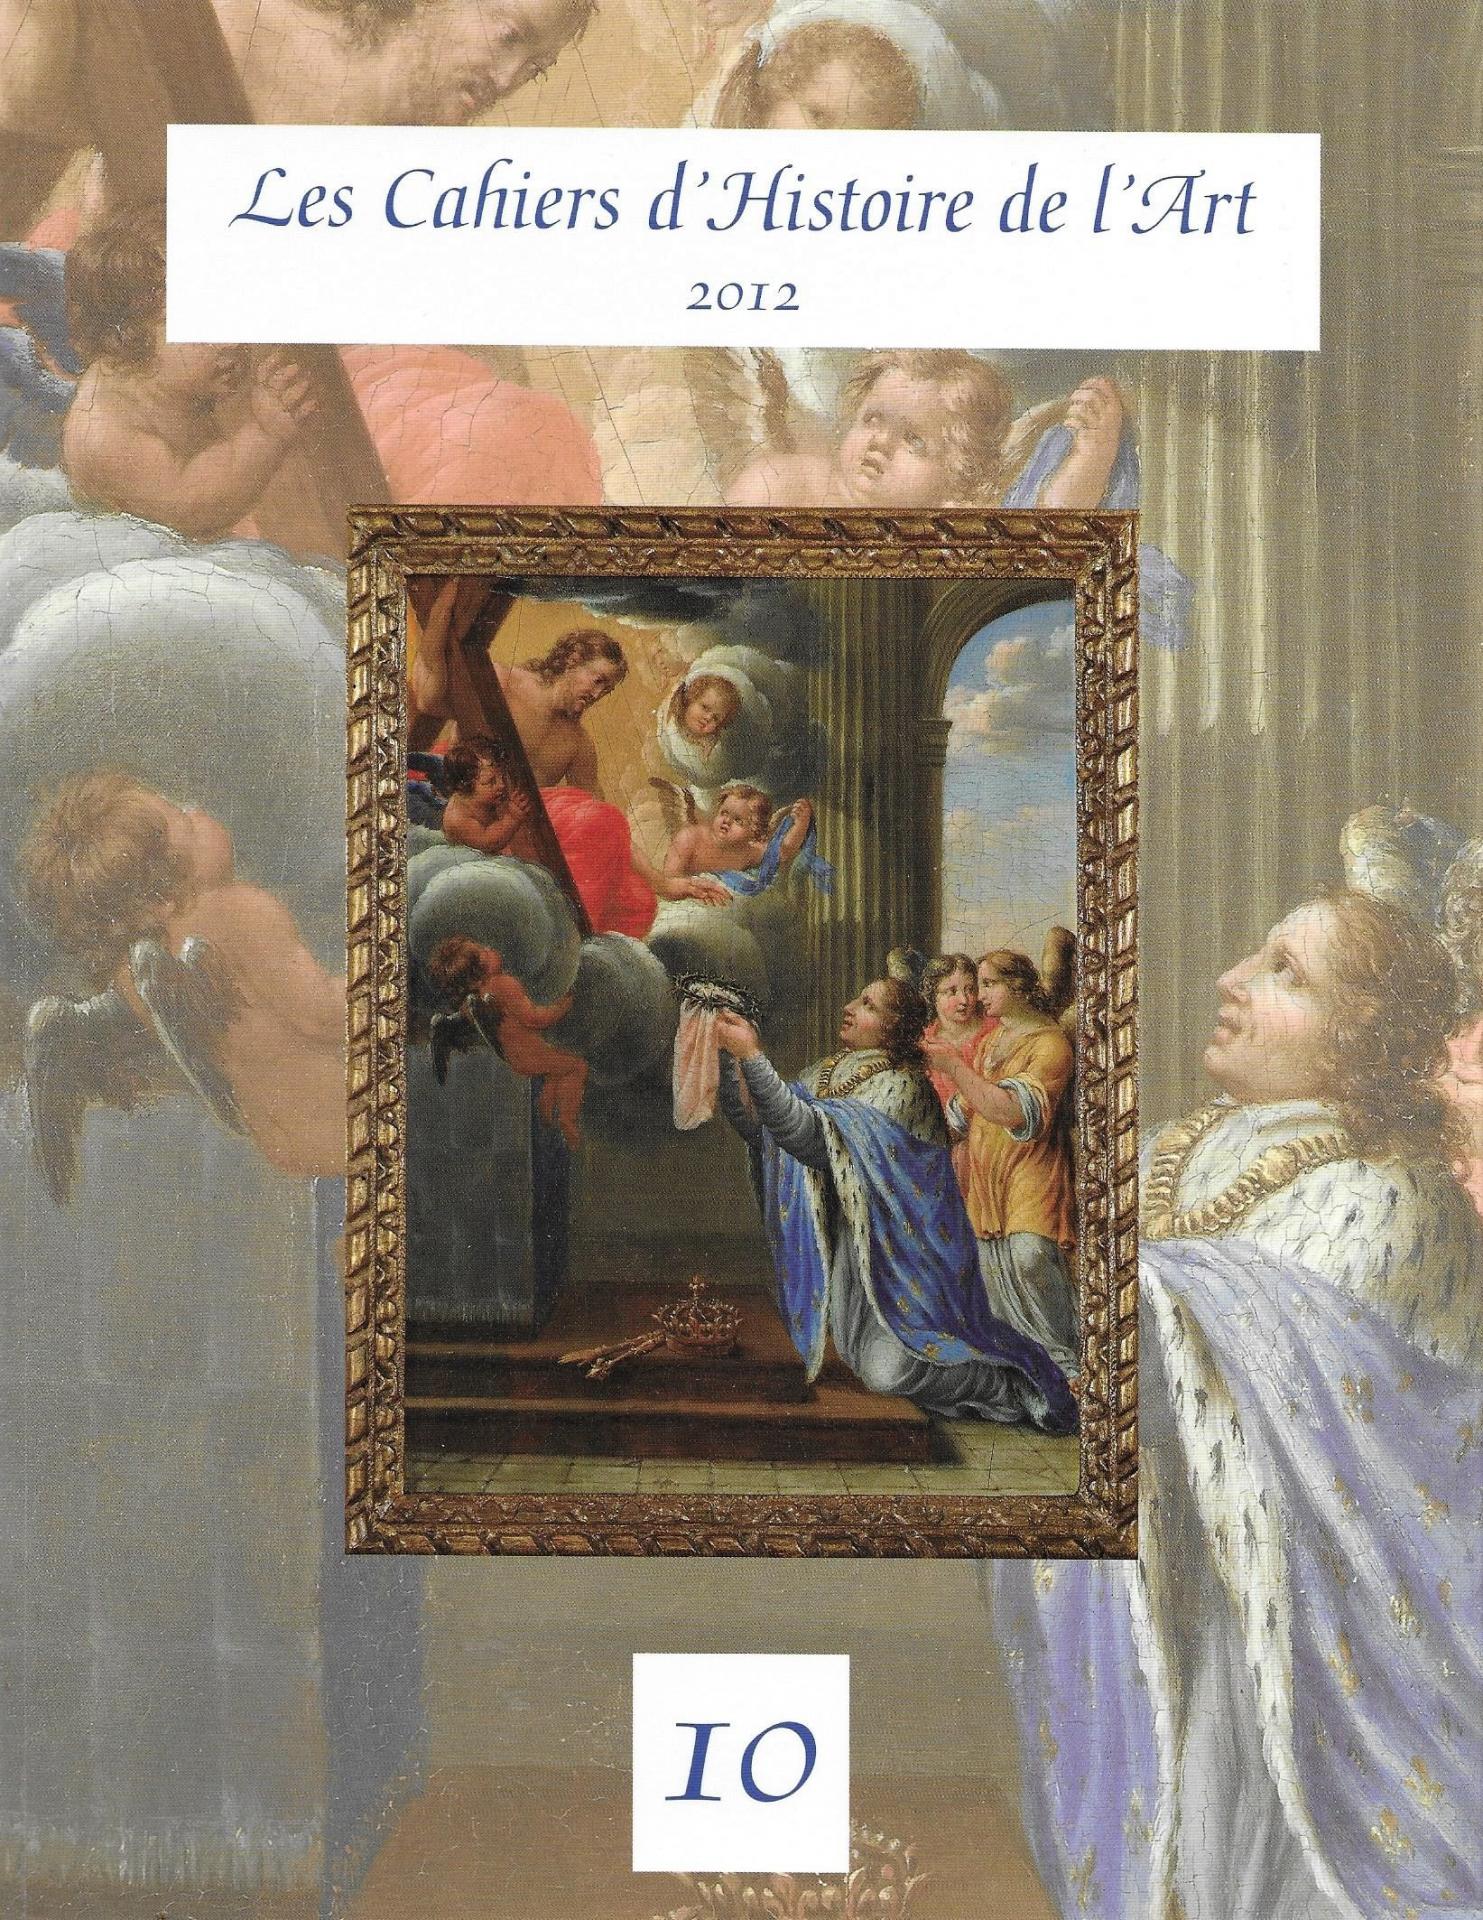 Les Cahiers d'Histoire de l'Art, n° 10, 2012